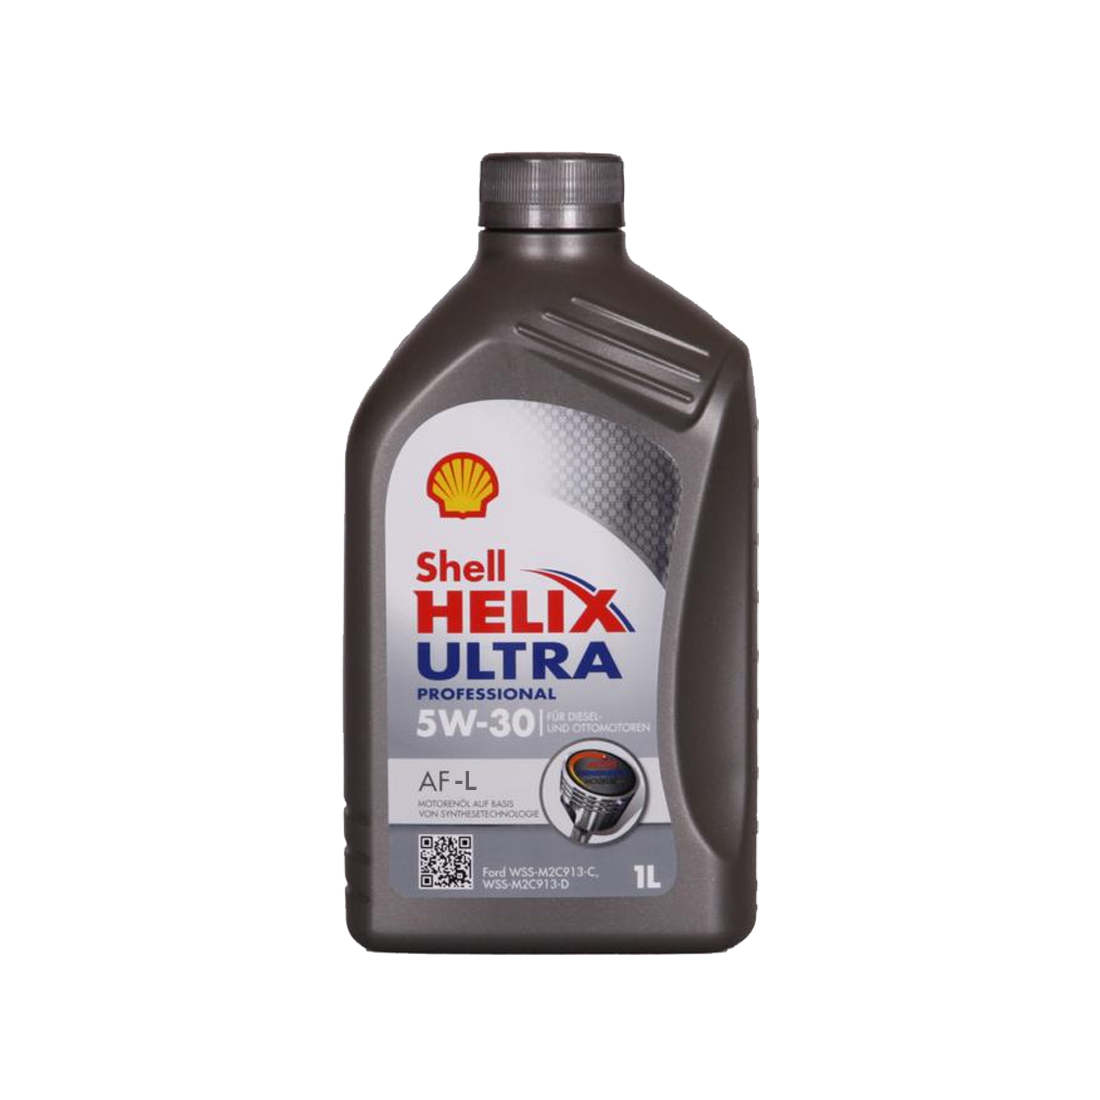 Syntetiskolja Shell Helix Ultra Professional AF-L 5W-30, 1L